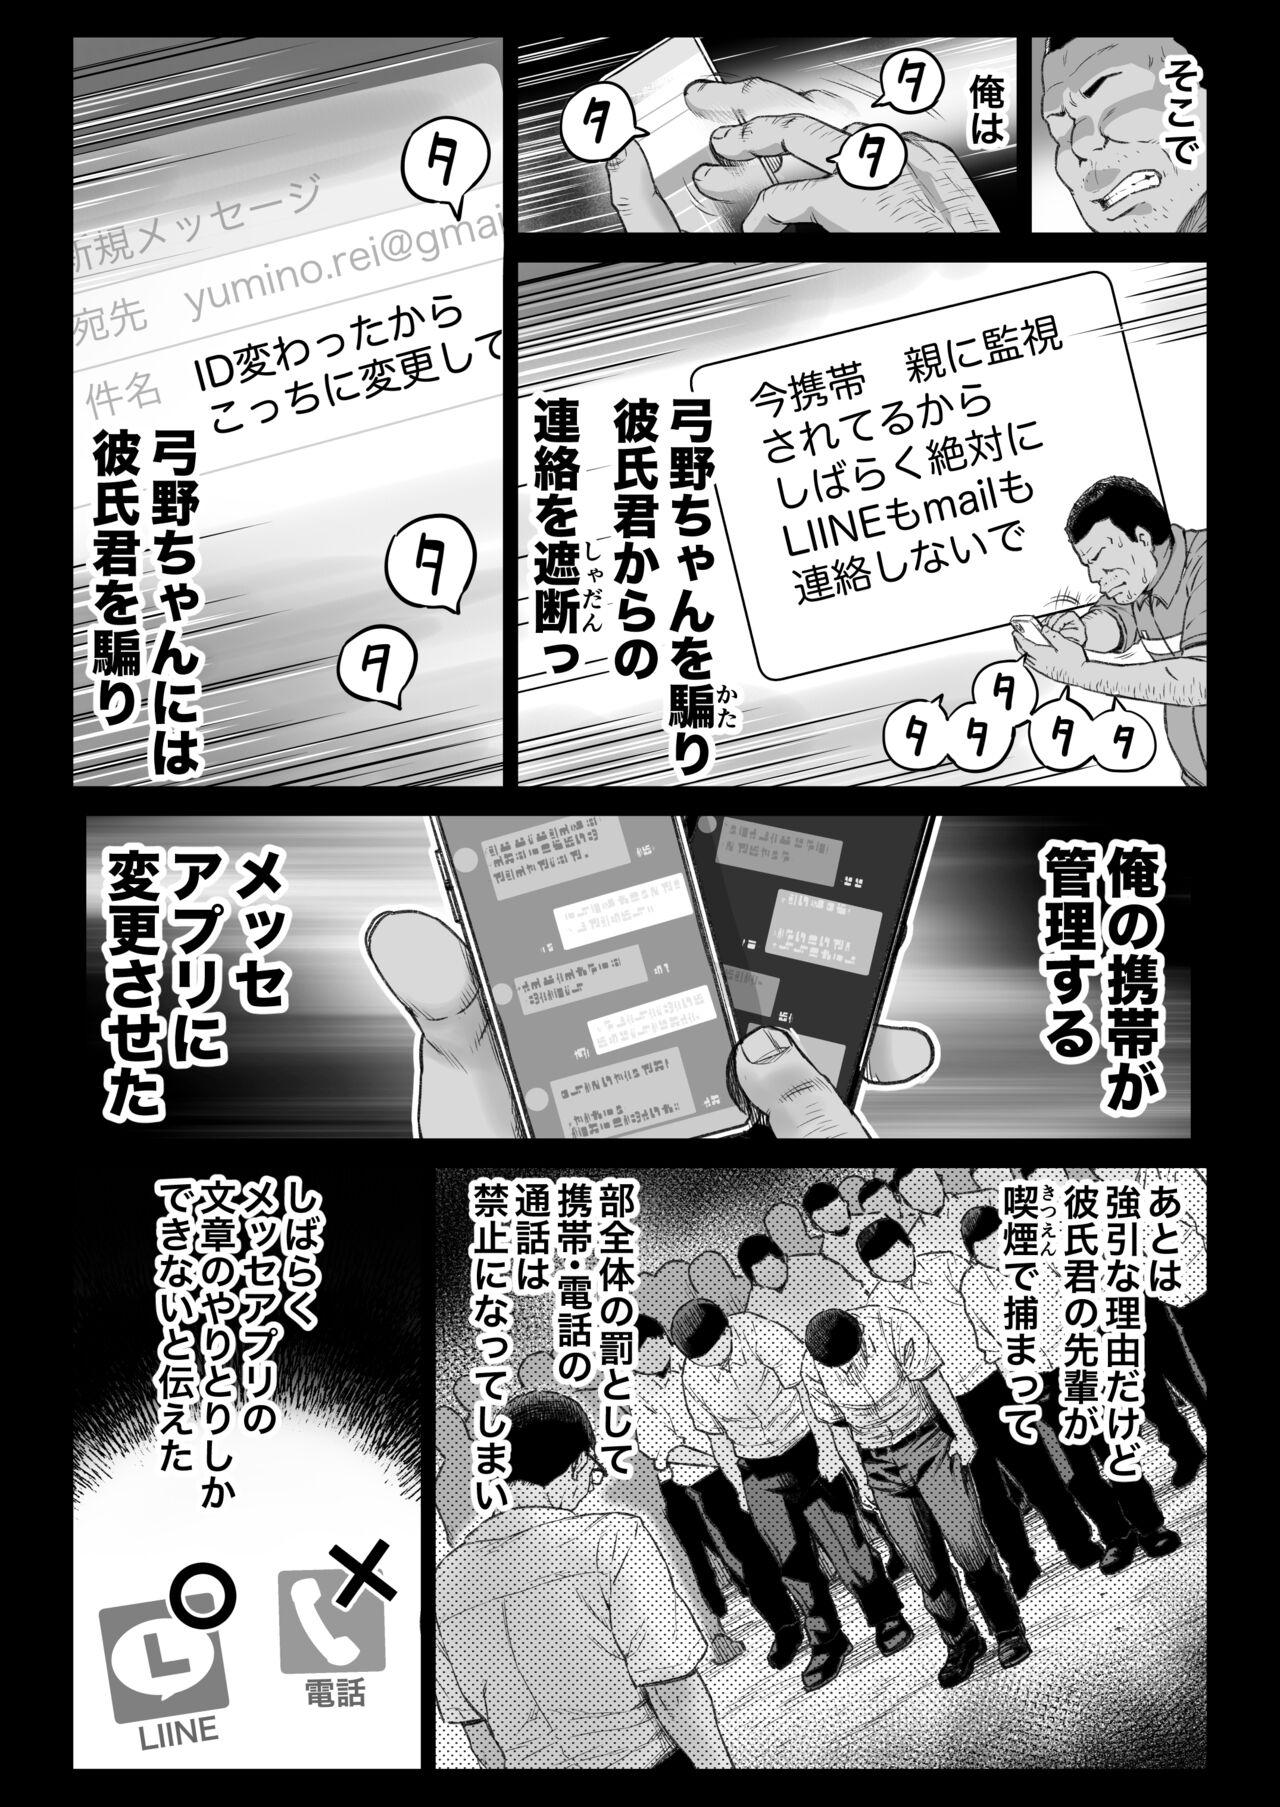 Crossdresser Kareshi Mochi Gakusei Beit Yumino-chan wa Kyou mo Tenchou ni Nerawareru - Original Foot Fetish - Page 8